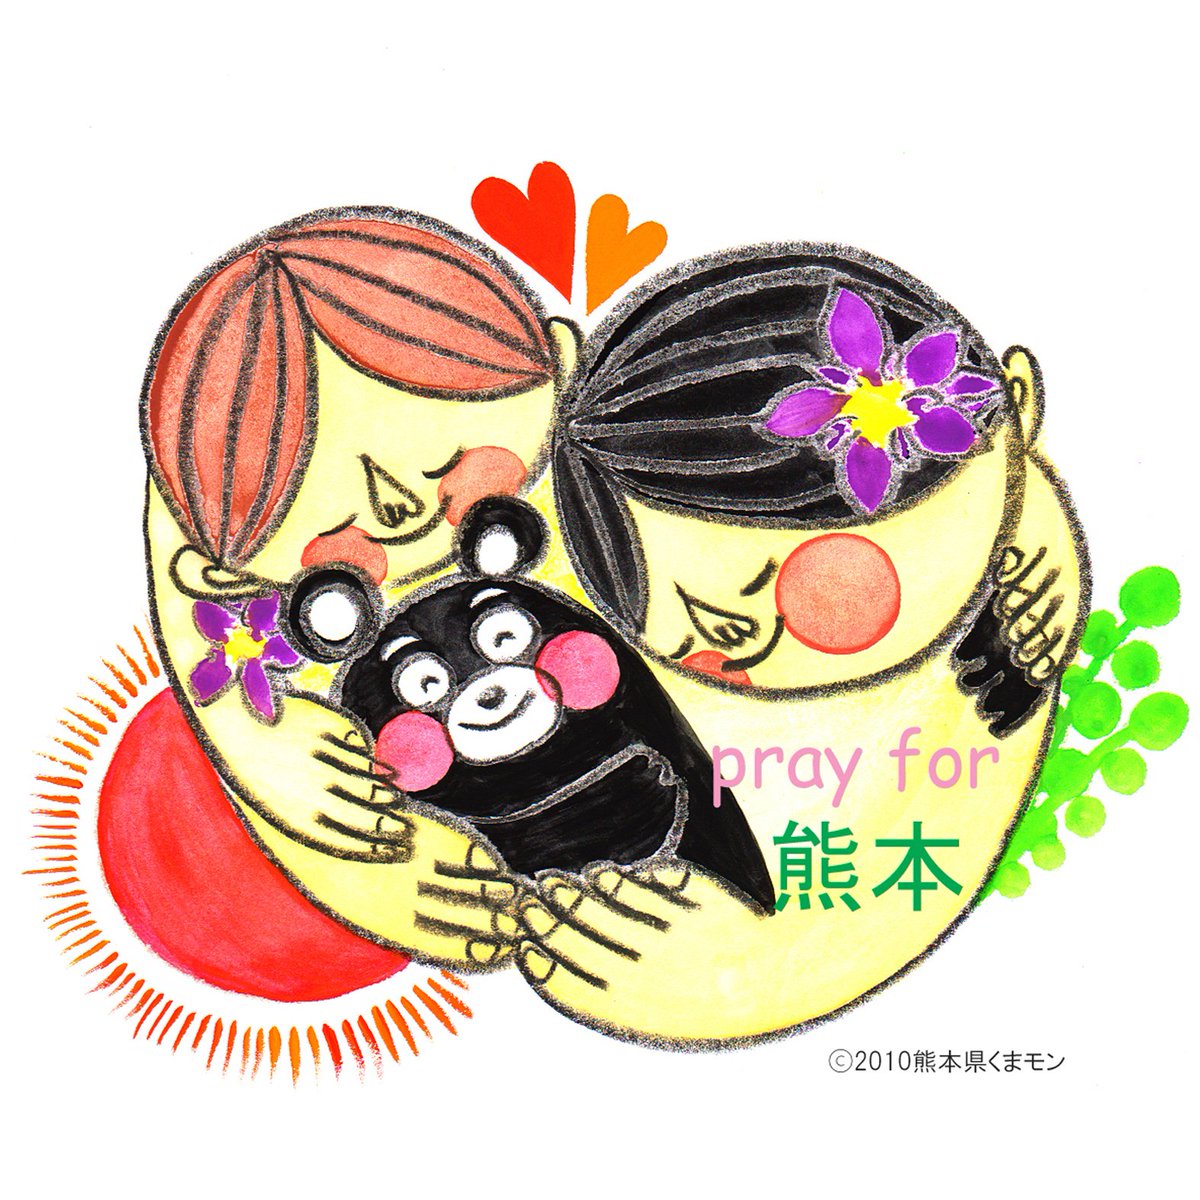 片柳弘史 Ana ゆめジェット のデザイナー Rieさんによる熊本応援イラスト 熊本 を思うたくさんの方々の愛情が あたたかな色彩で表現されています 髪飾りは熊本の県の花 リンドウです くまモン頑張れ絵